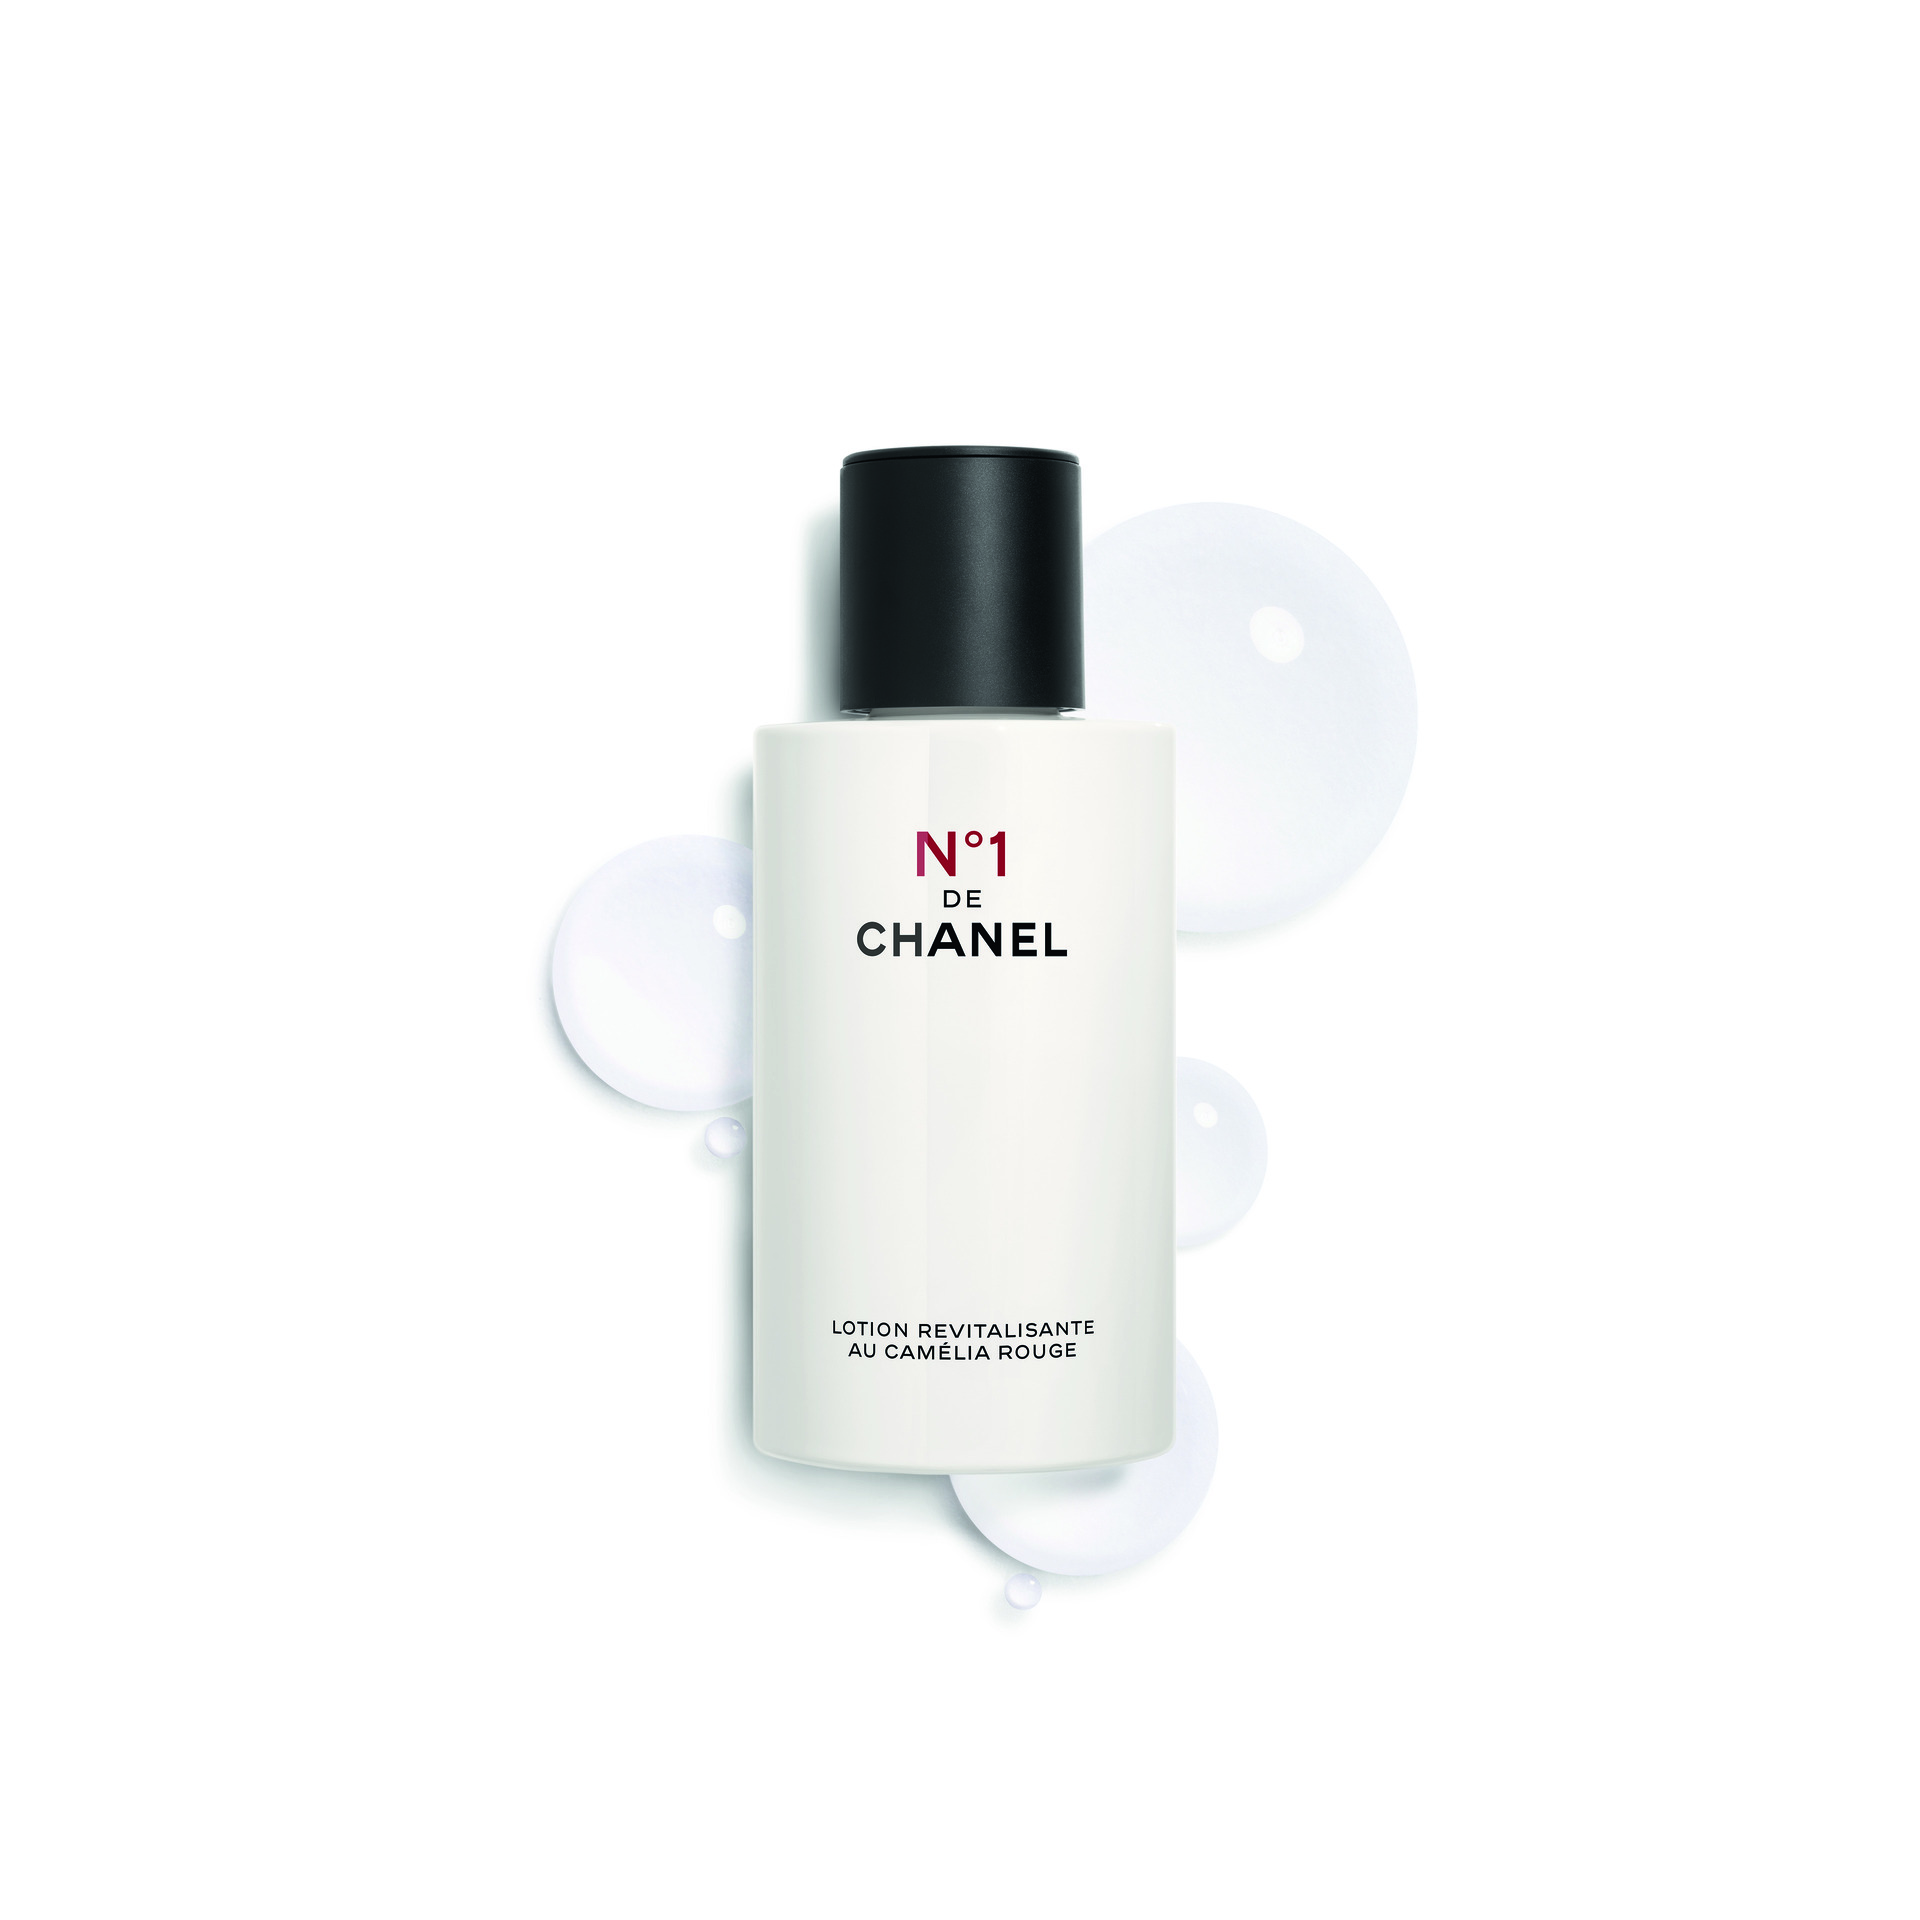 Chanel No.5 The Body Cream 5 oz